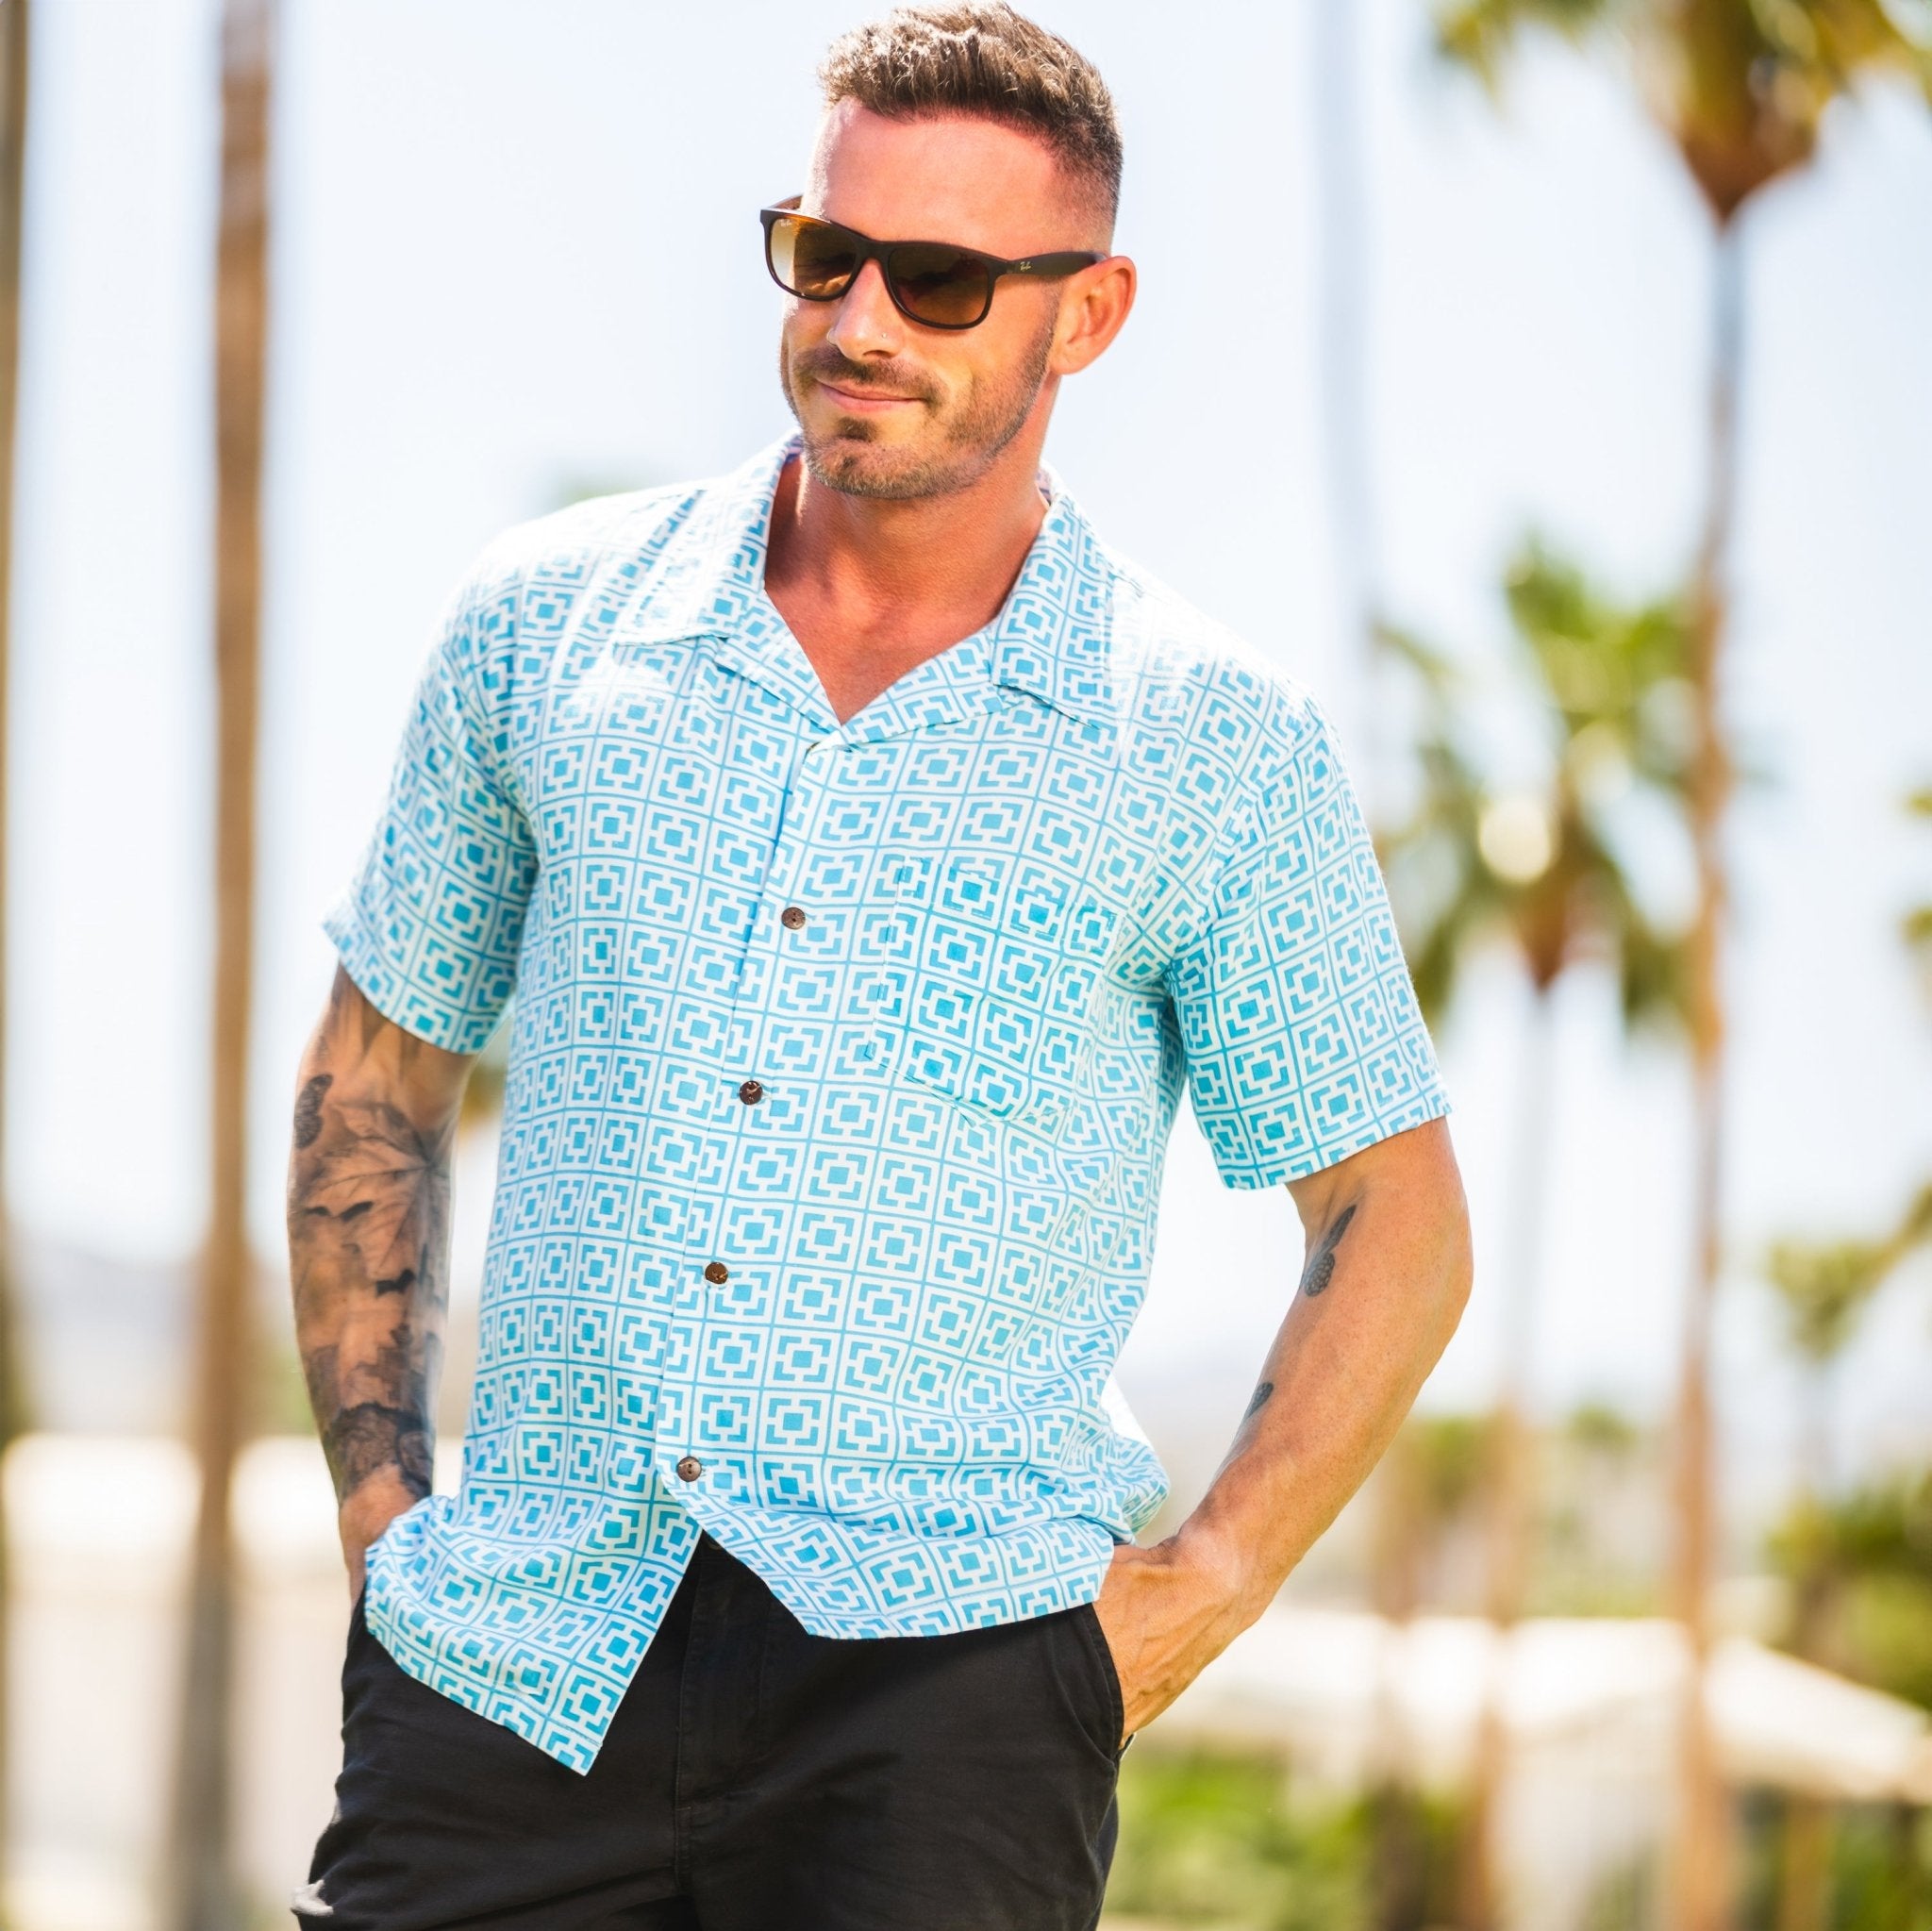 Unisex V-neck Shirt - Palm Springs Retro Martini - Neon Blue – Destination  PSP